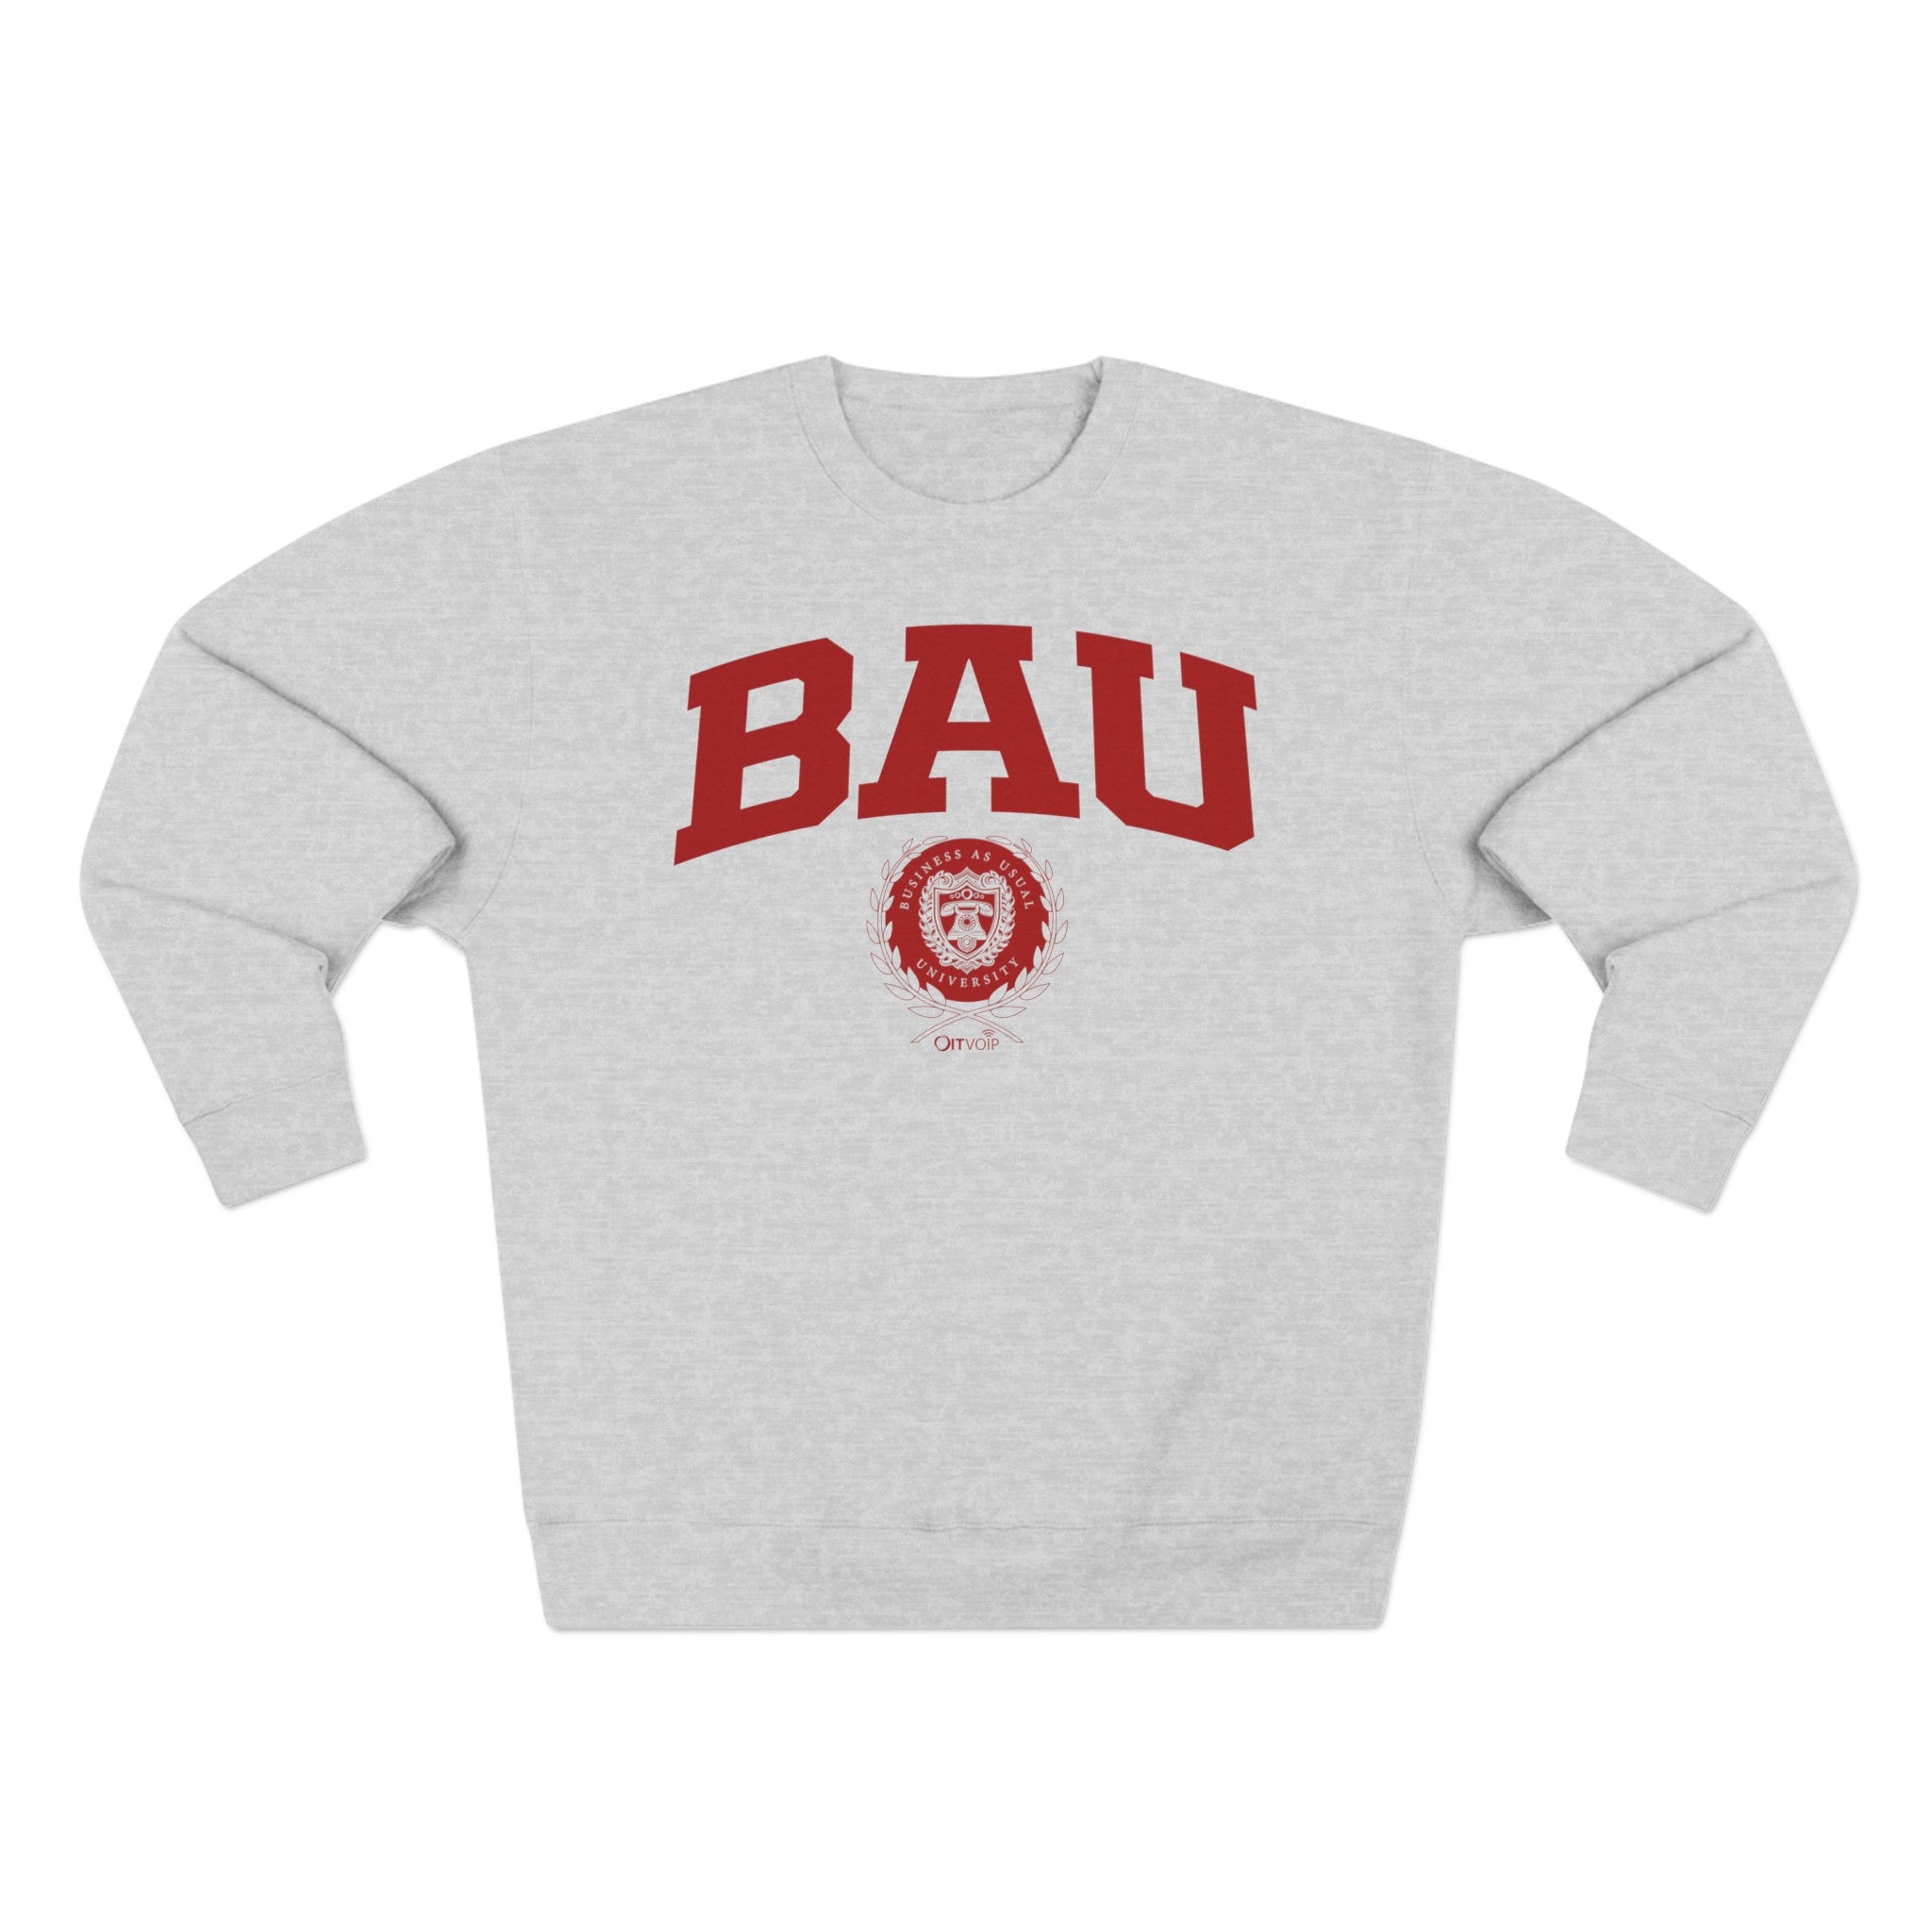 BAU Collection - Unisex Sweatshirt